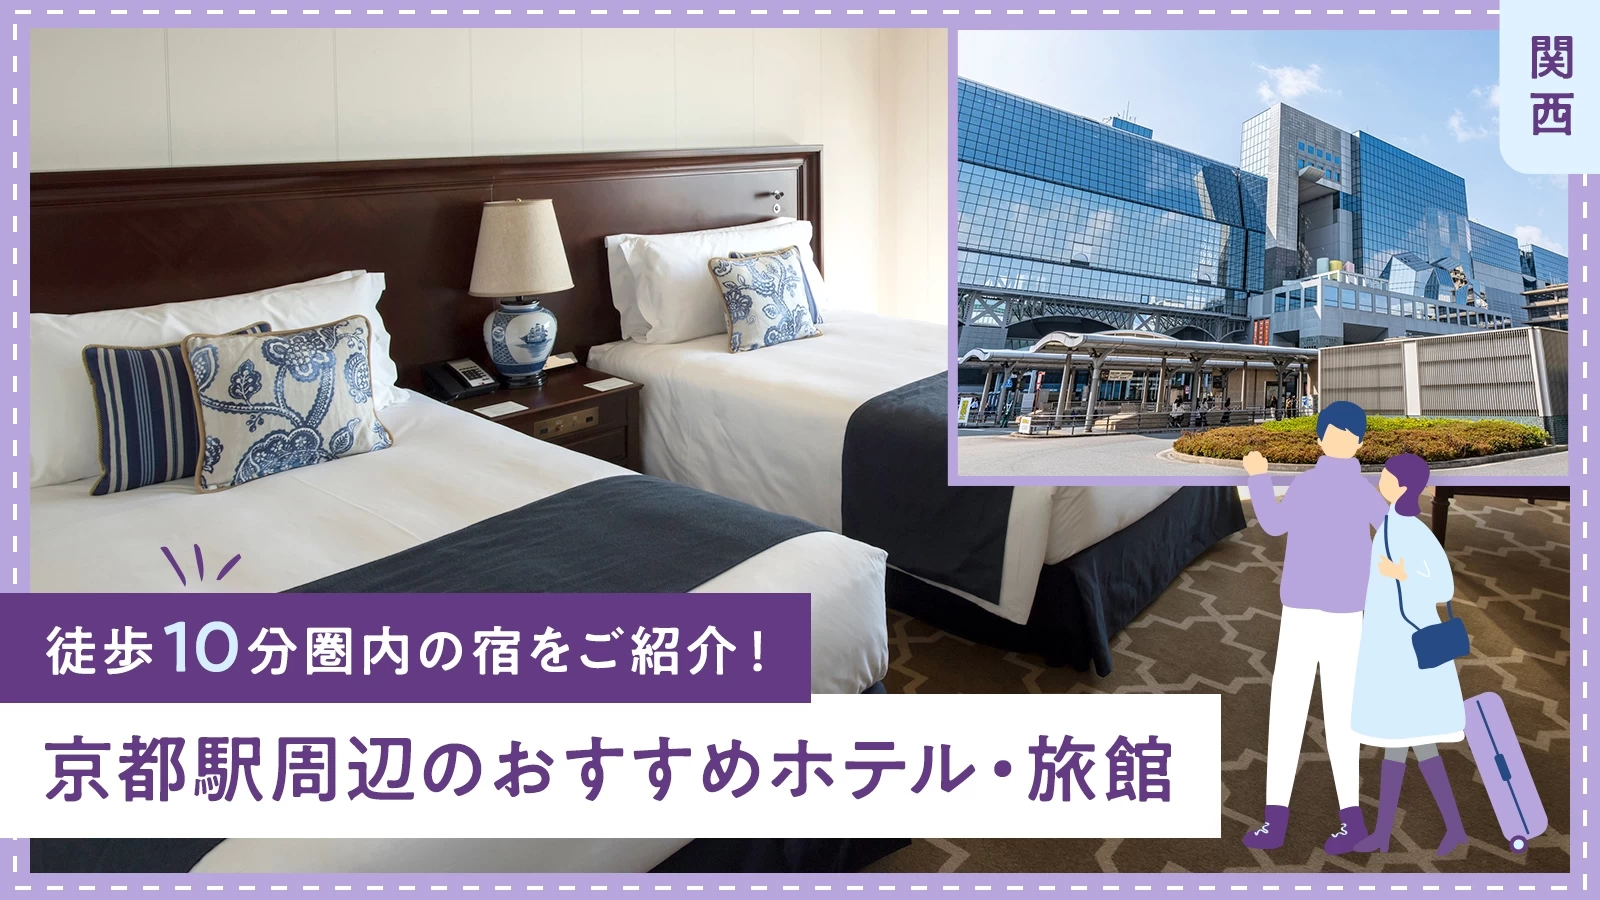 【関西】京都駅周辺のおすすめホテル・旅館7選 徒歩10分圏内の宿をご紹介！